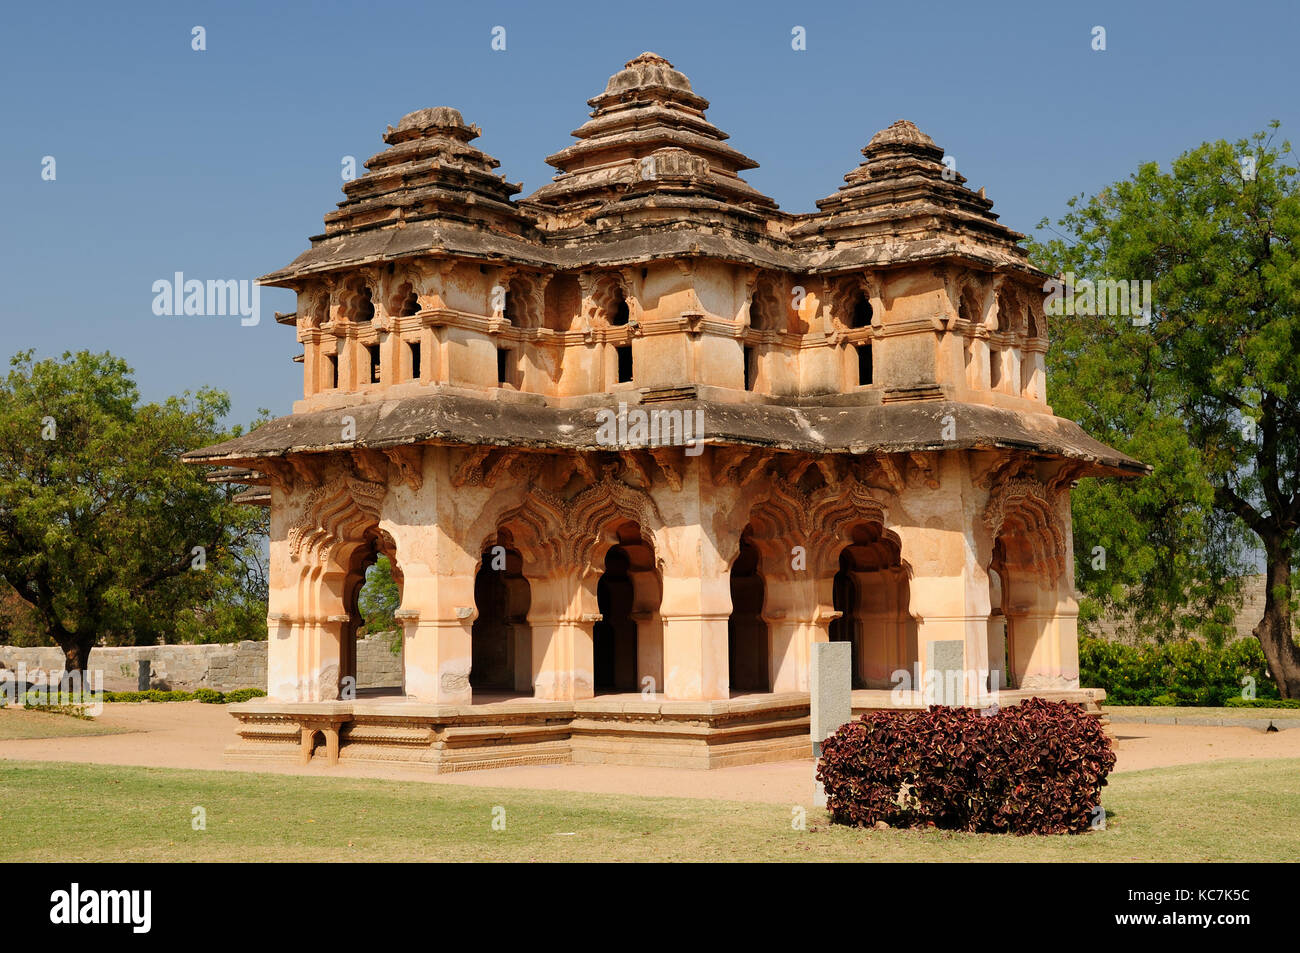 L'ancienne civilisation indienne dans hampi site du patrimoine mondial de l'unesco, indiaold architecture bâtiment monument voyage hindouisme Banque D'Images